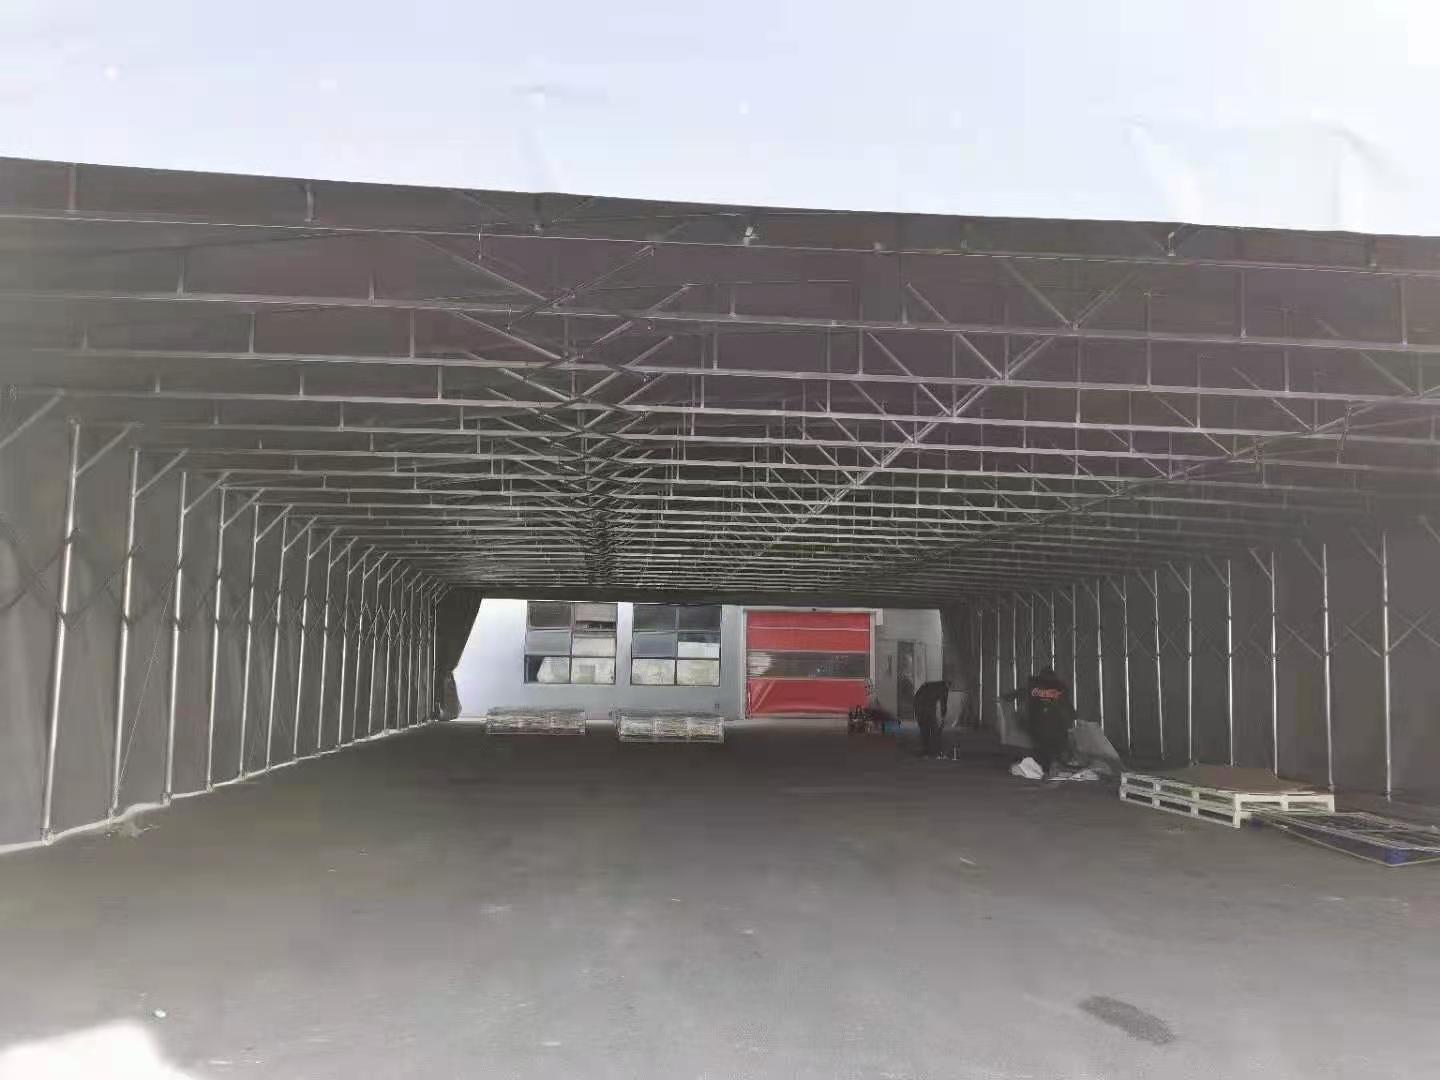 膜结构自行车棚 钢结构、膜结构 易之发 遮阳膜结构车棚 免费测量安装